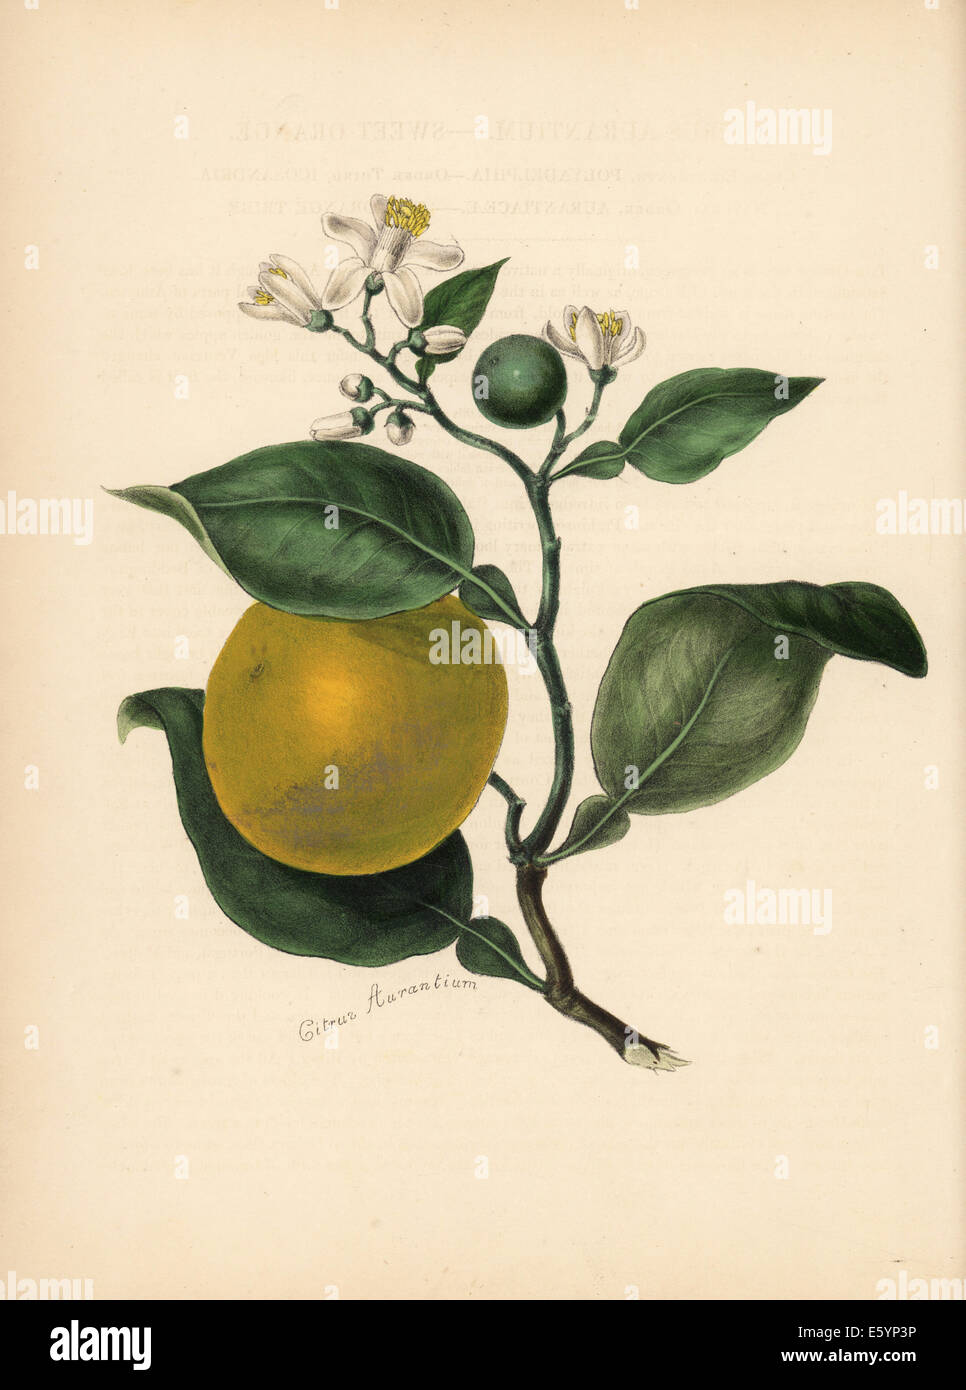 Sweet orange, Citrus aurantium. Stock Photo